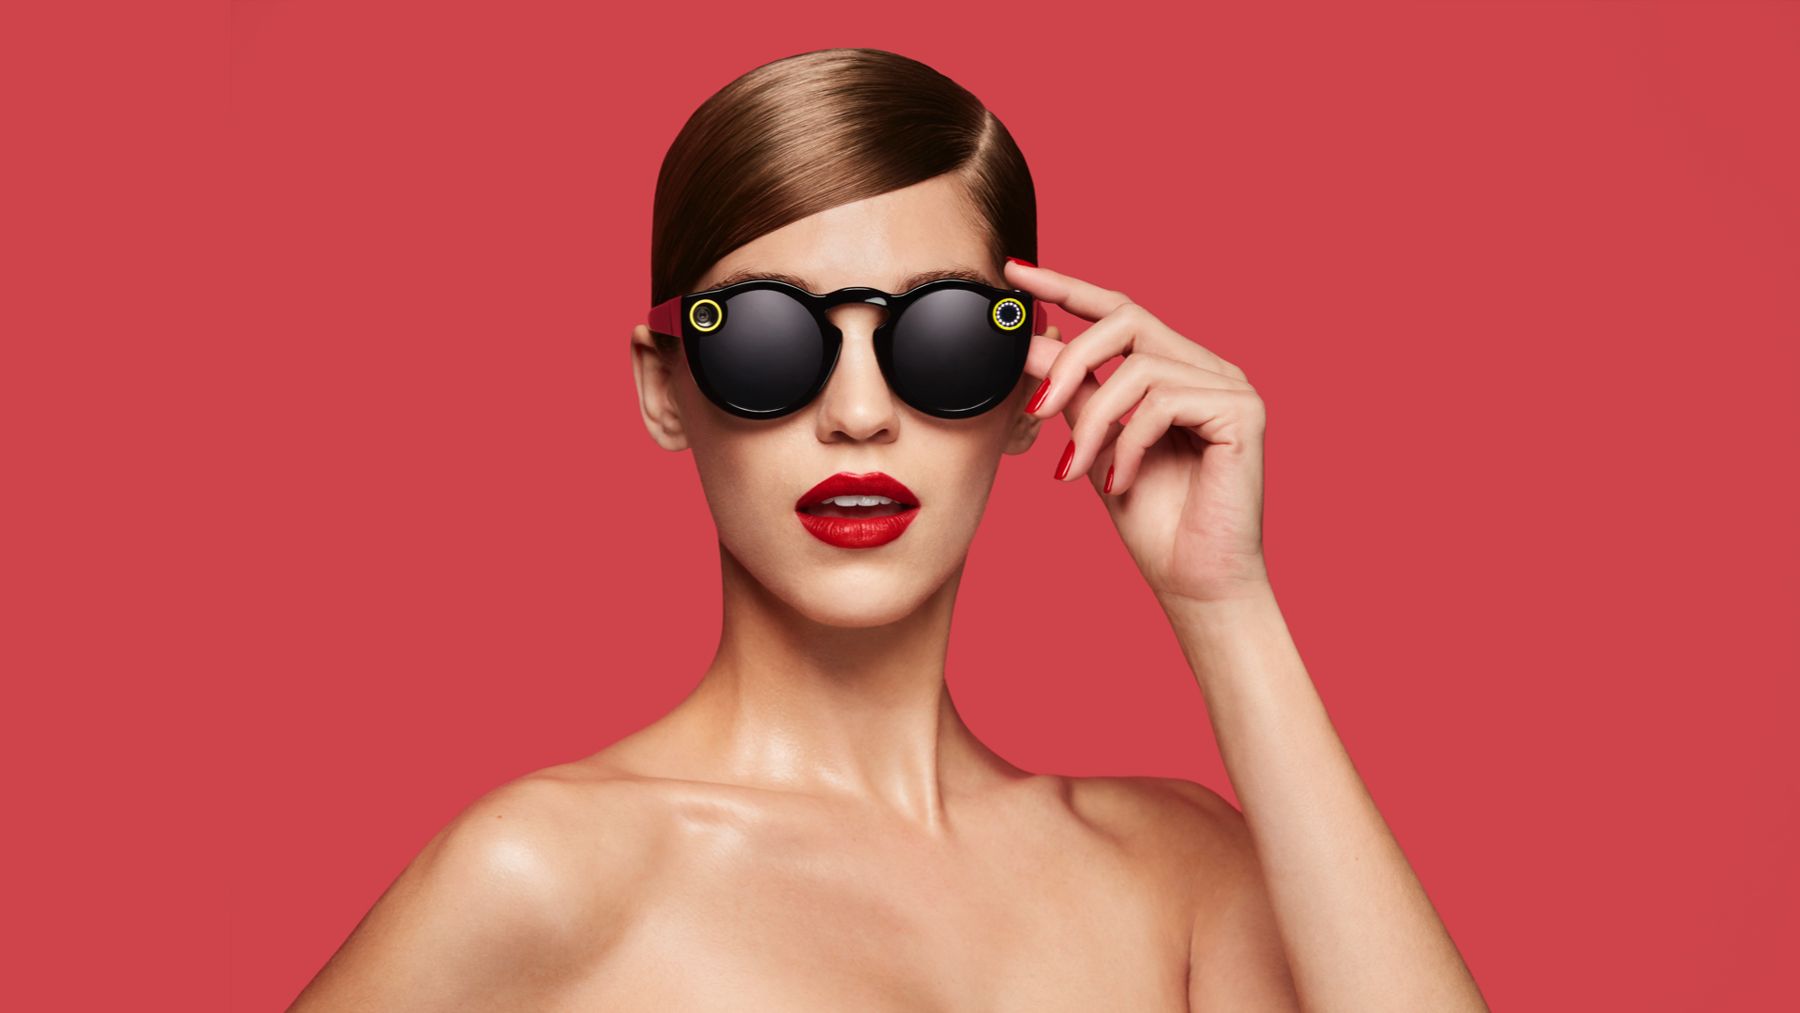 تتوفر نظارات Snapchat الآن - ولكن ما هي بالضبط؟